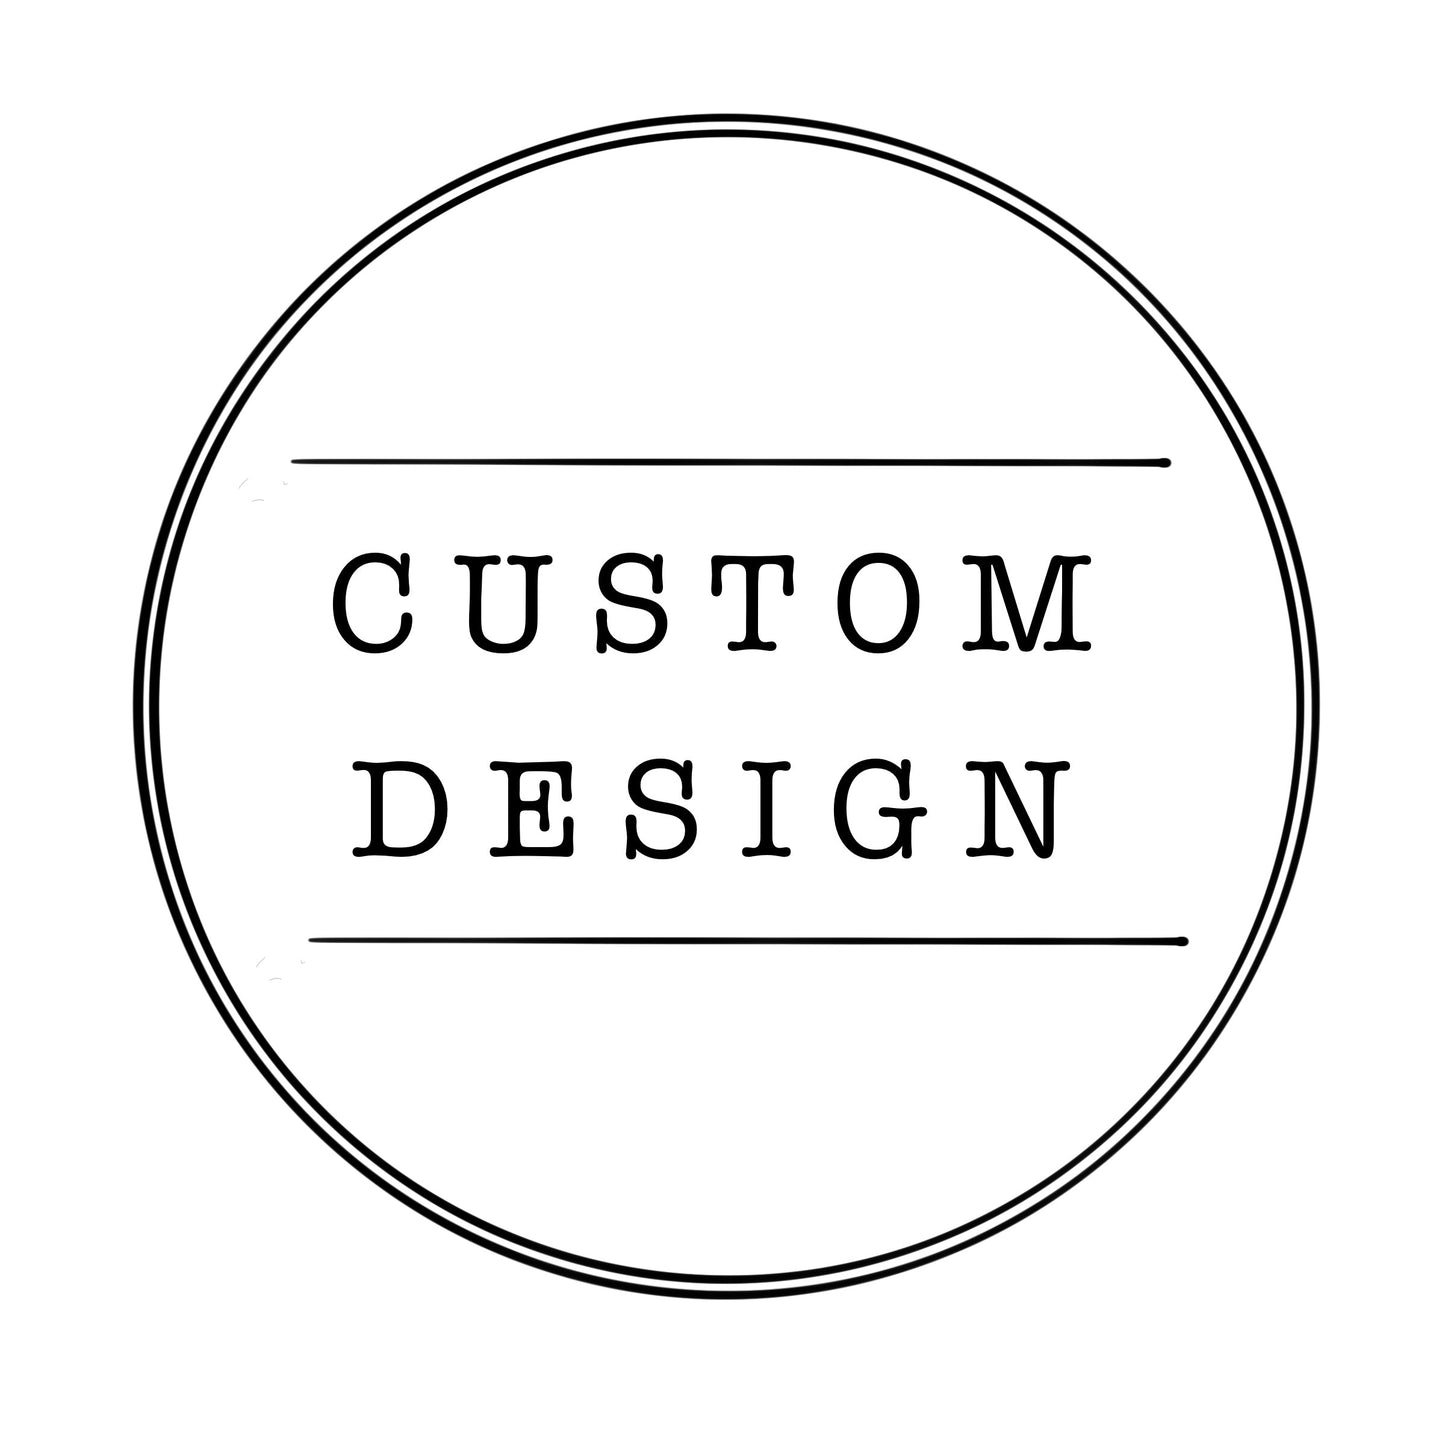 Custom Design for Tom